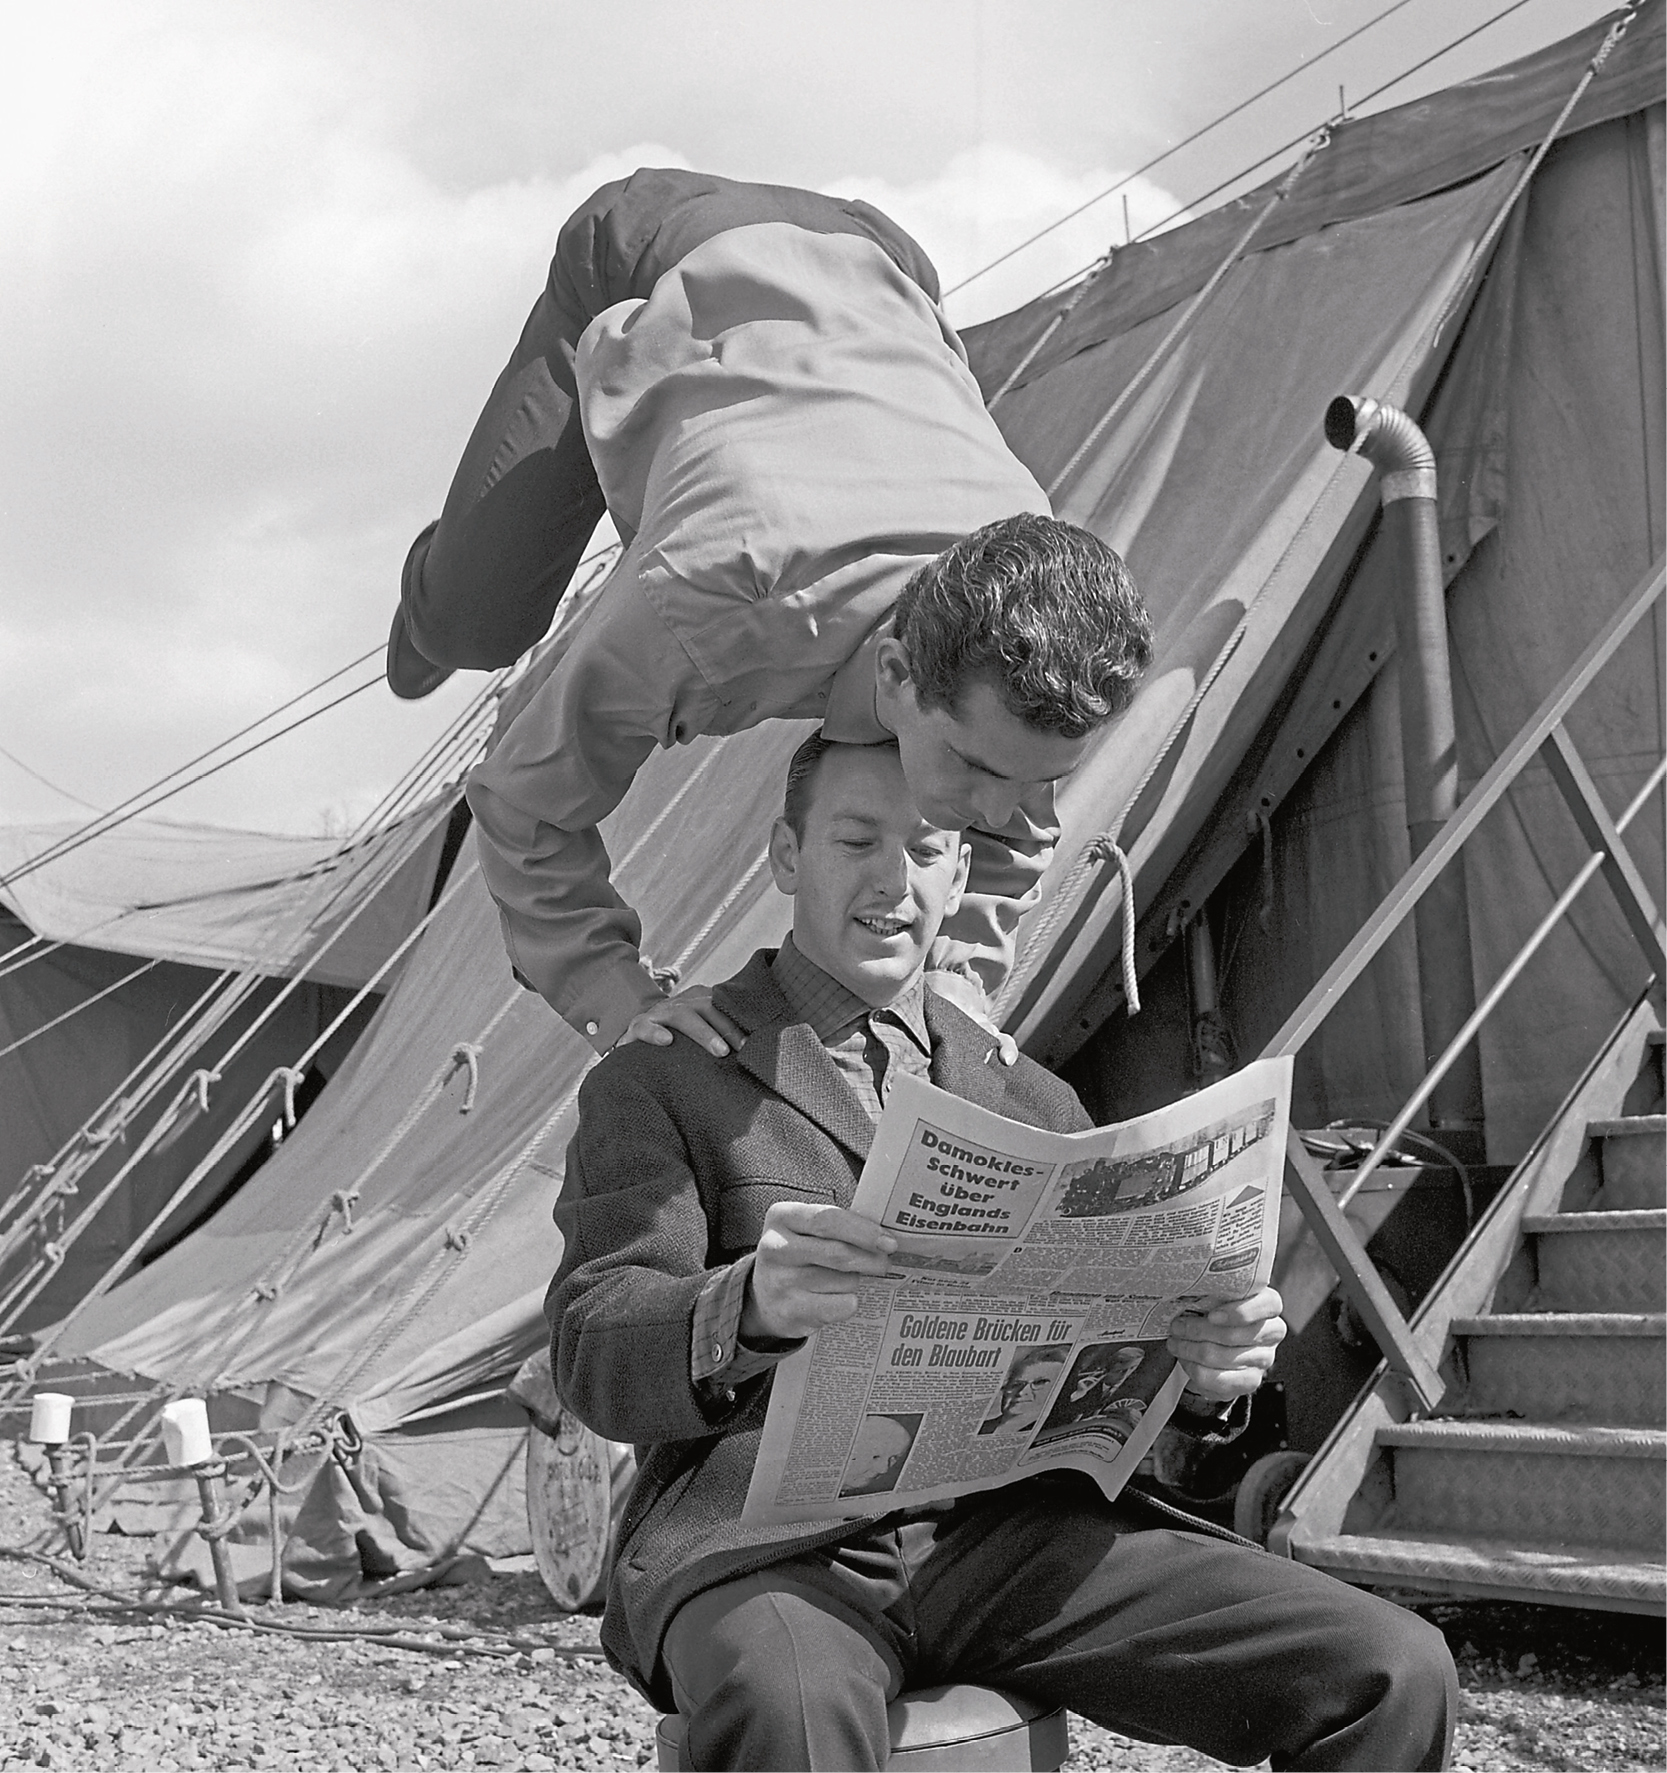 Ein Mann stützt sich auf einen anderen Mann und hebt dabei die Beine in die Luft, während beide Zeitung lesen